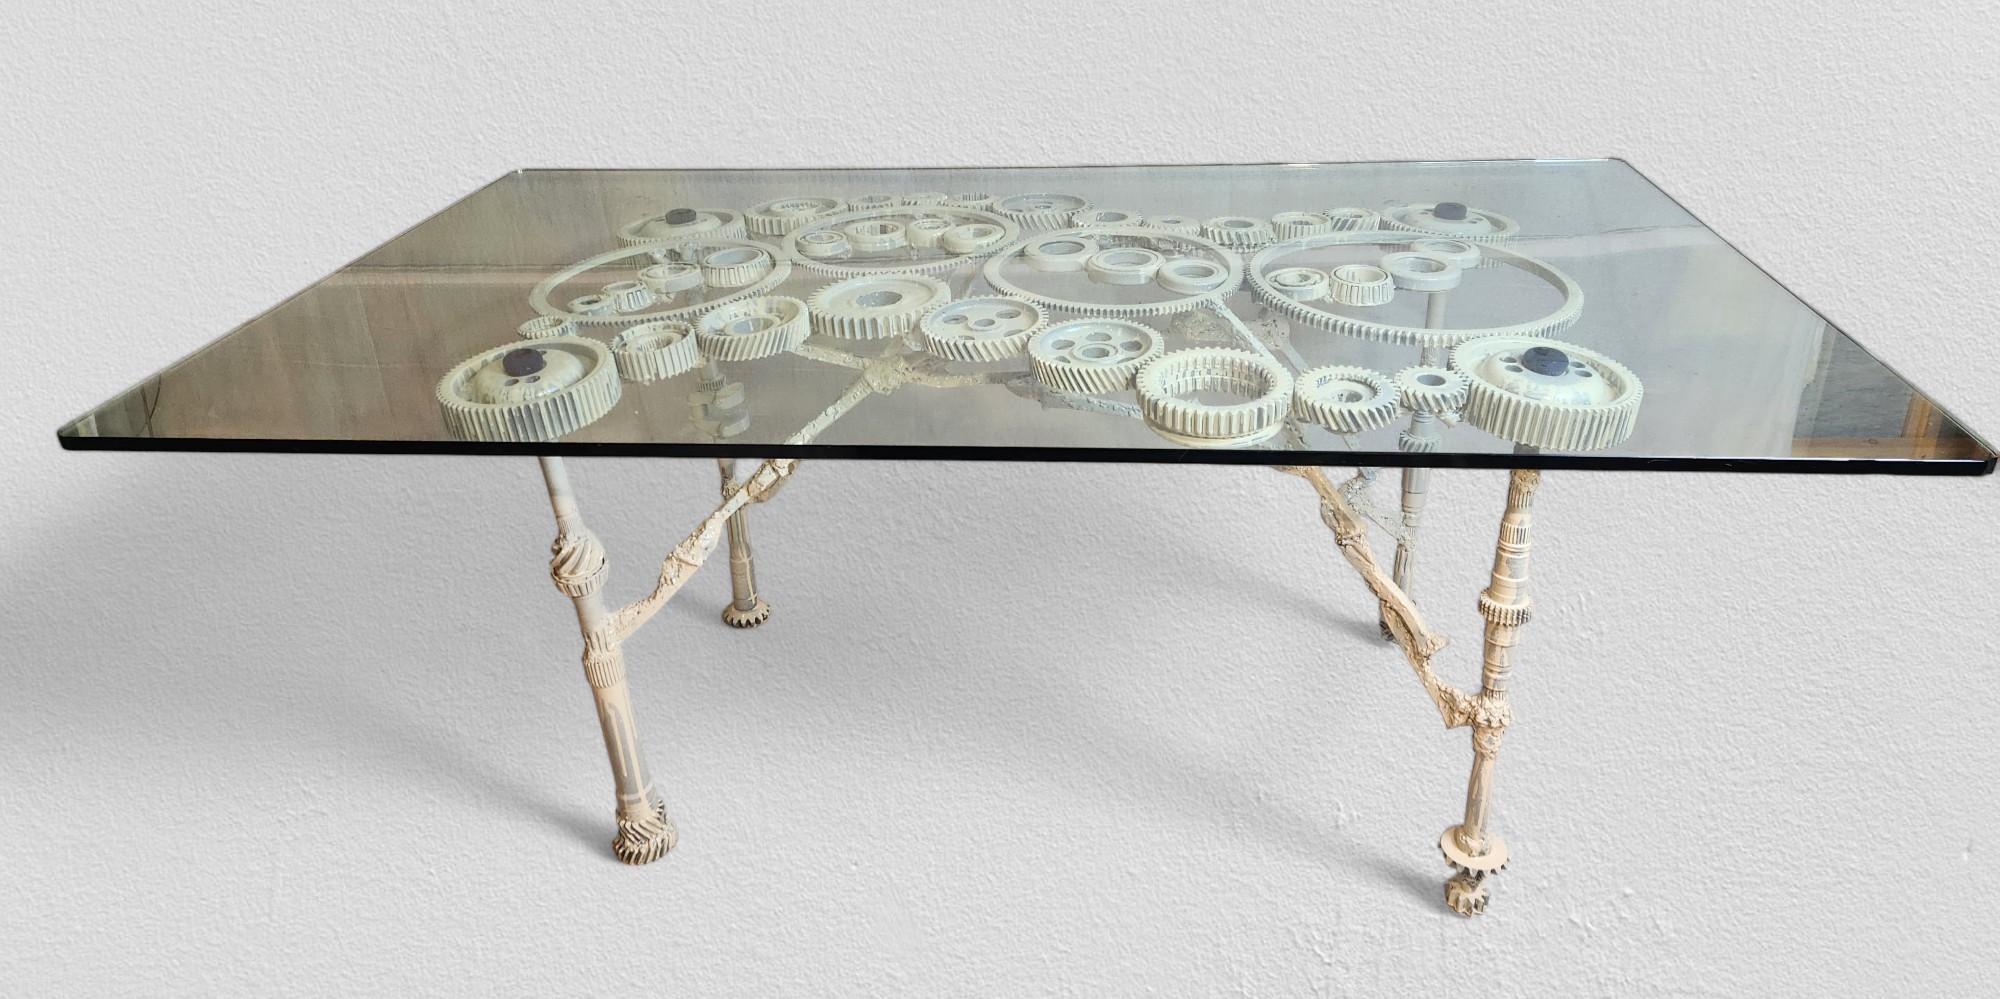 Une table fabriquée en studio dans les années 1970 à partir d'une sélection intéressante et unique d'engrenages en fonte, de pignons et de divers arbres d'entraînement cannelés, associée artistiquement à une traverse de pointes soudées au laitier,